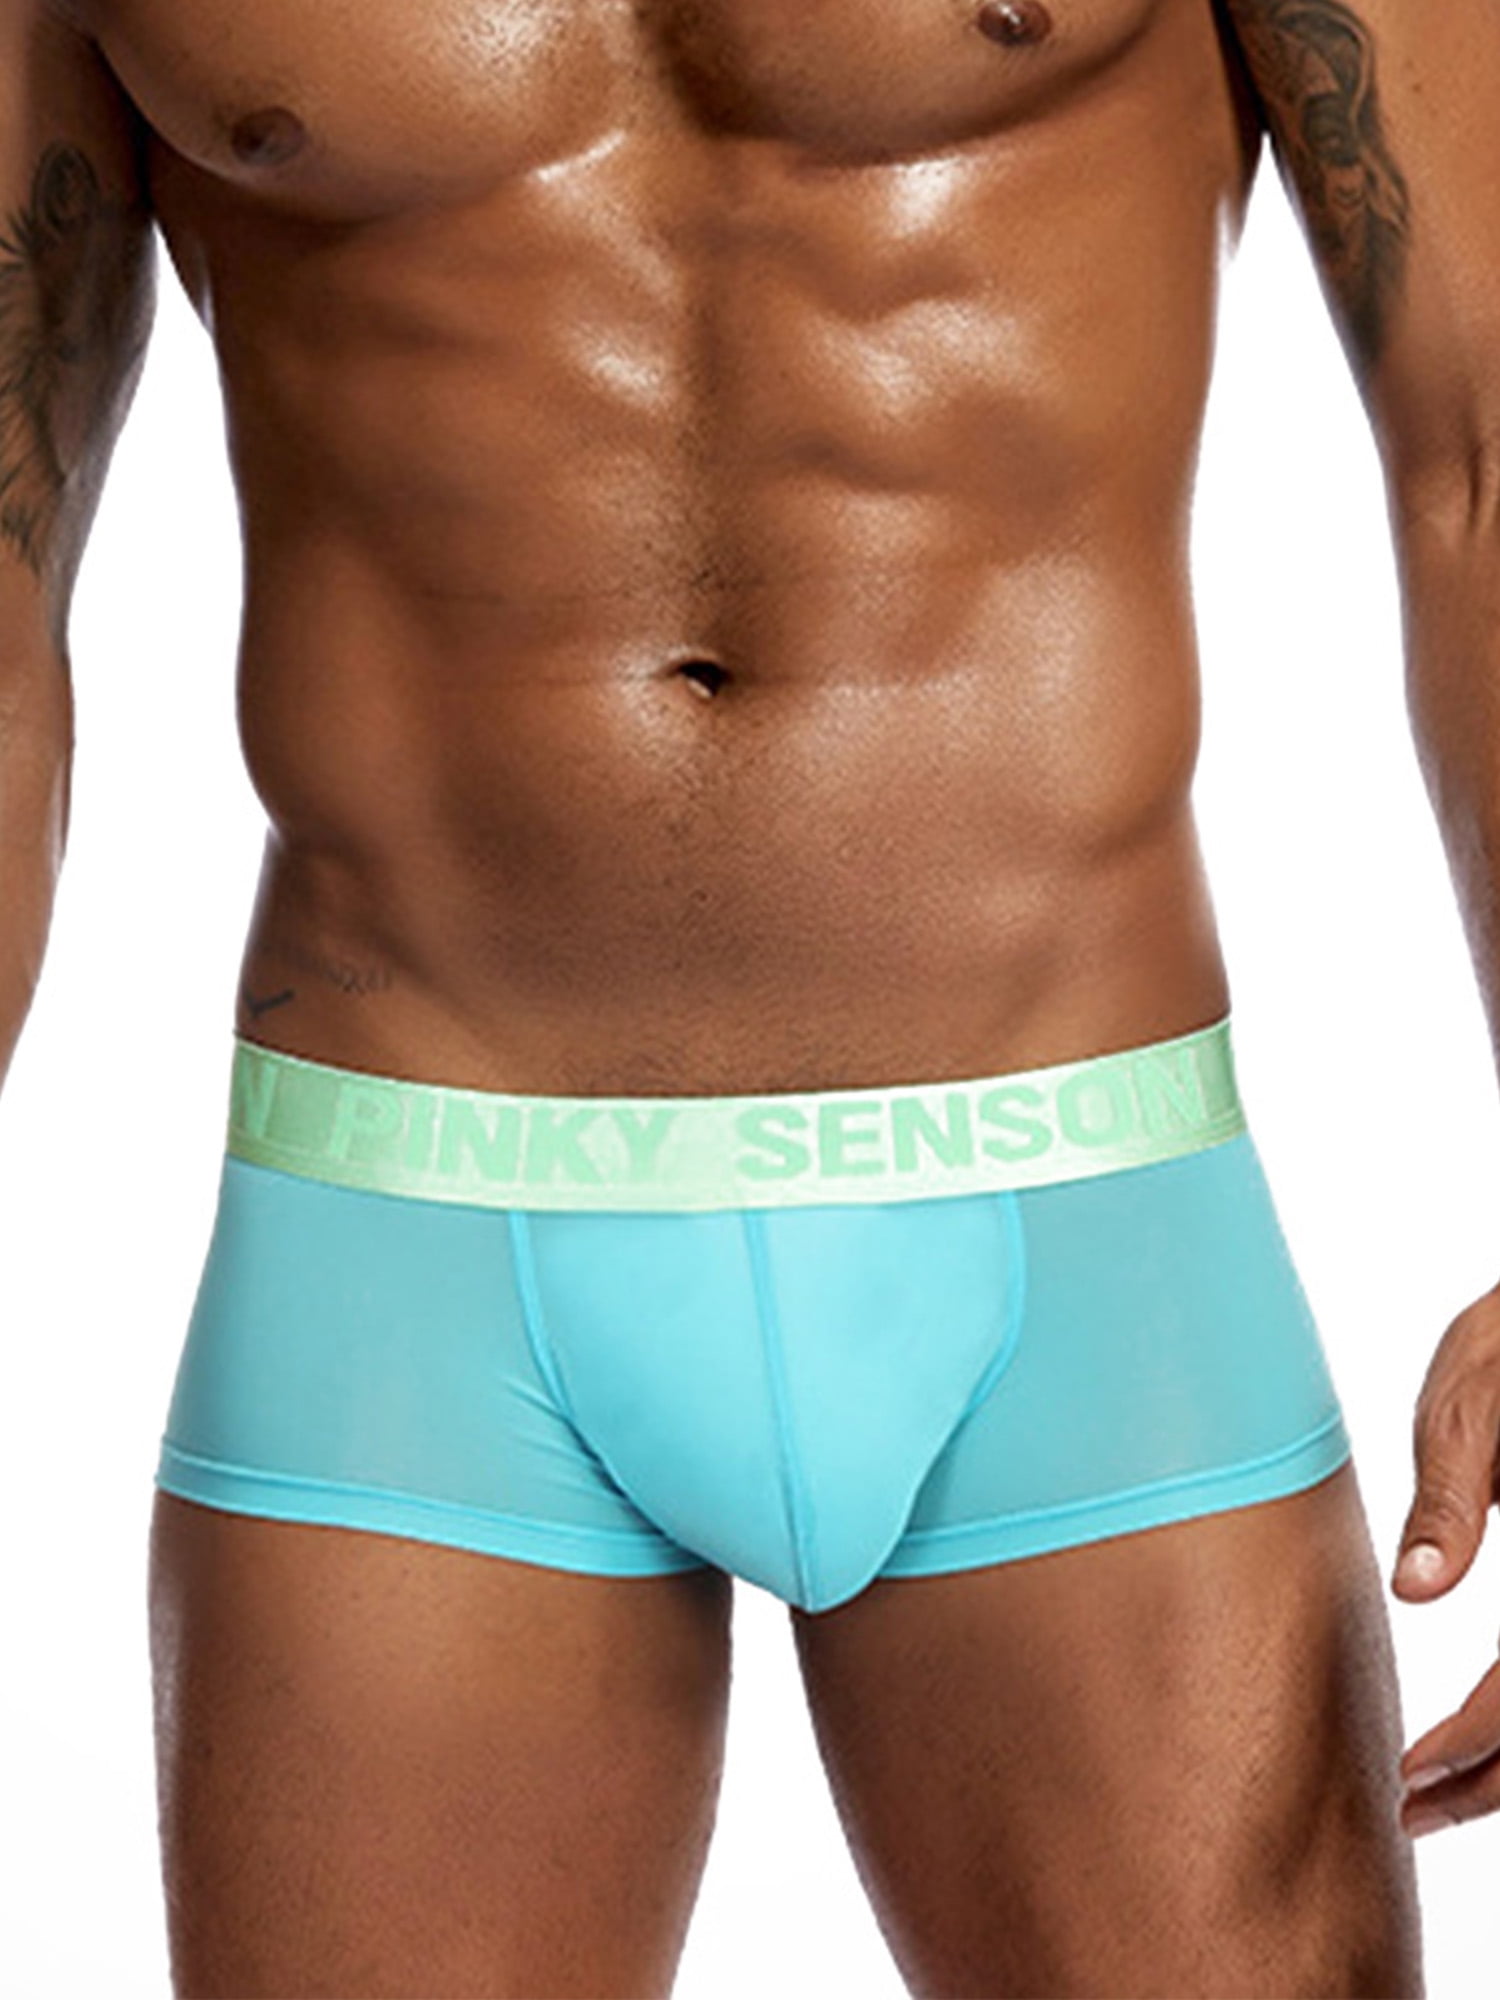 4 Men Underwear Boxer Briefs Pouch Cotton Trunk Shorts Knockers Pants Bulge XS-S 